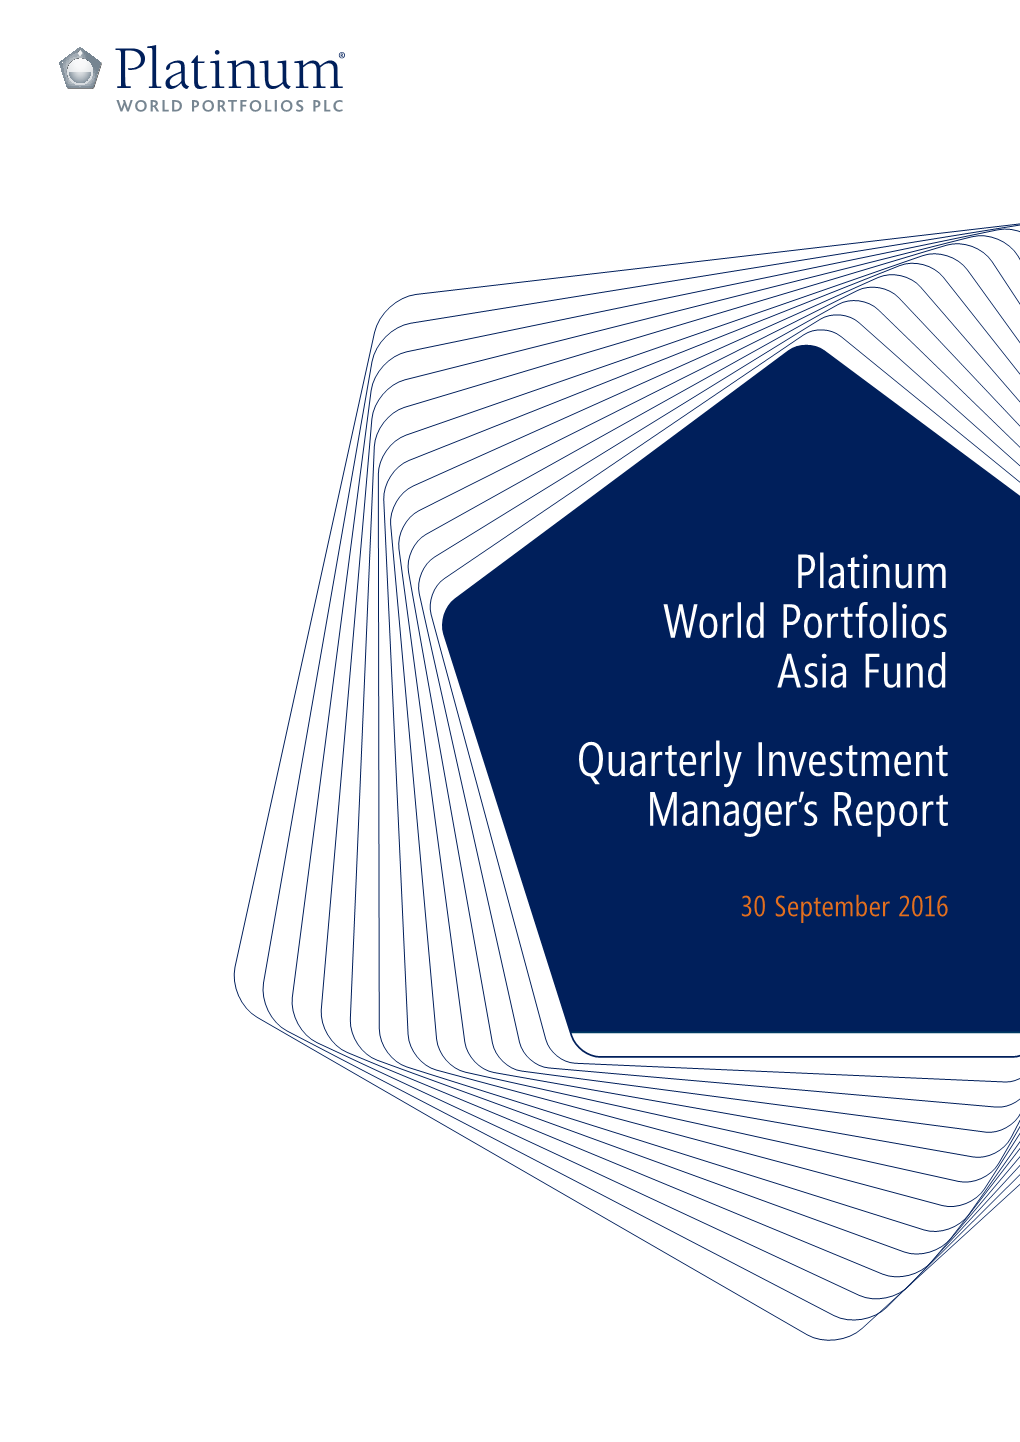 Platinum World Portfolios Asia Fund Quarterly Investment Manager's